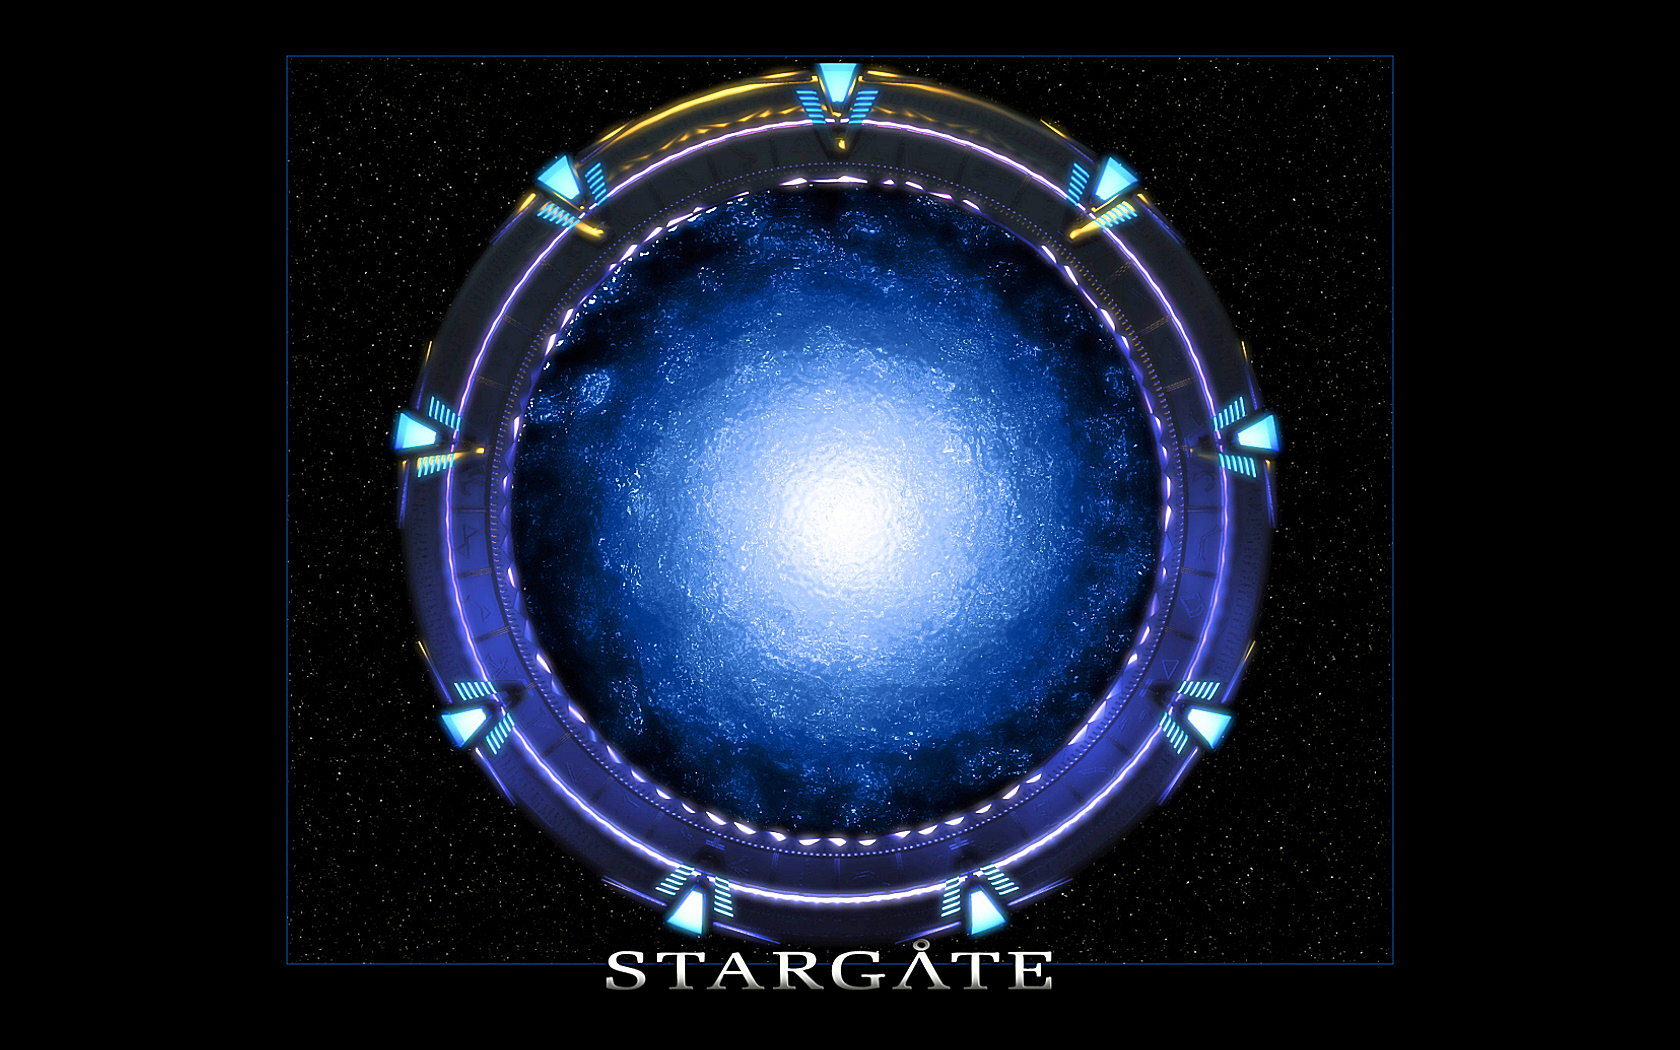 The Stargate Wallpaper